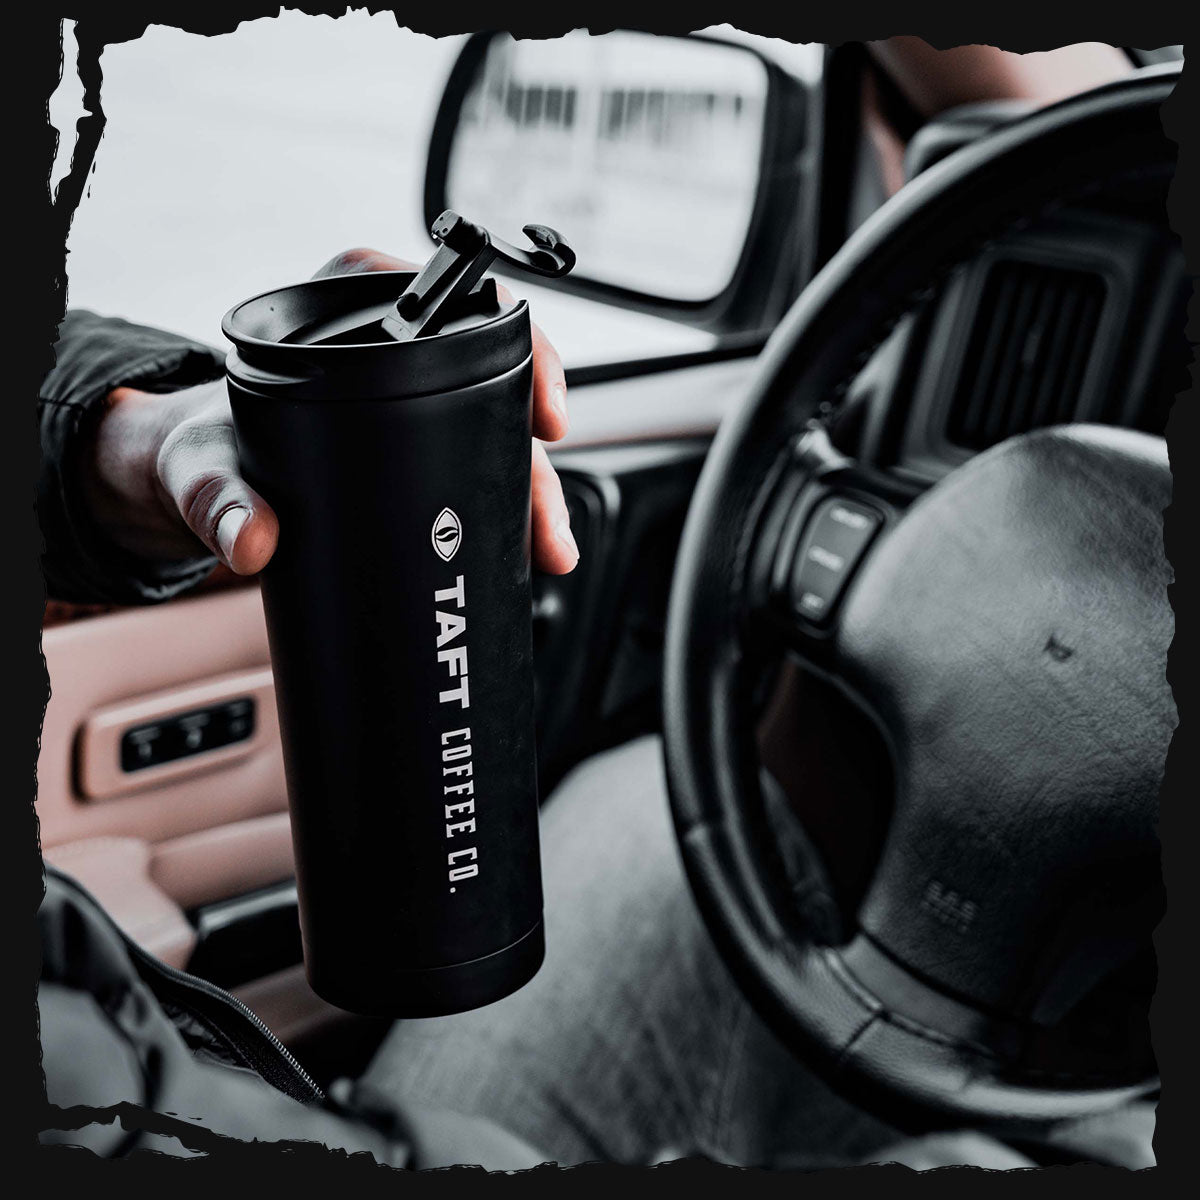 Aracın şoför koltuğunda oturarak filtre kahve dolu TAFT Termos tutan bir kişi yer almaktadır.